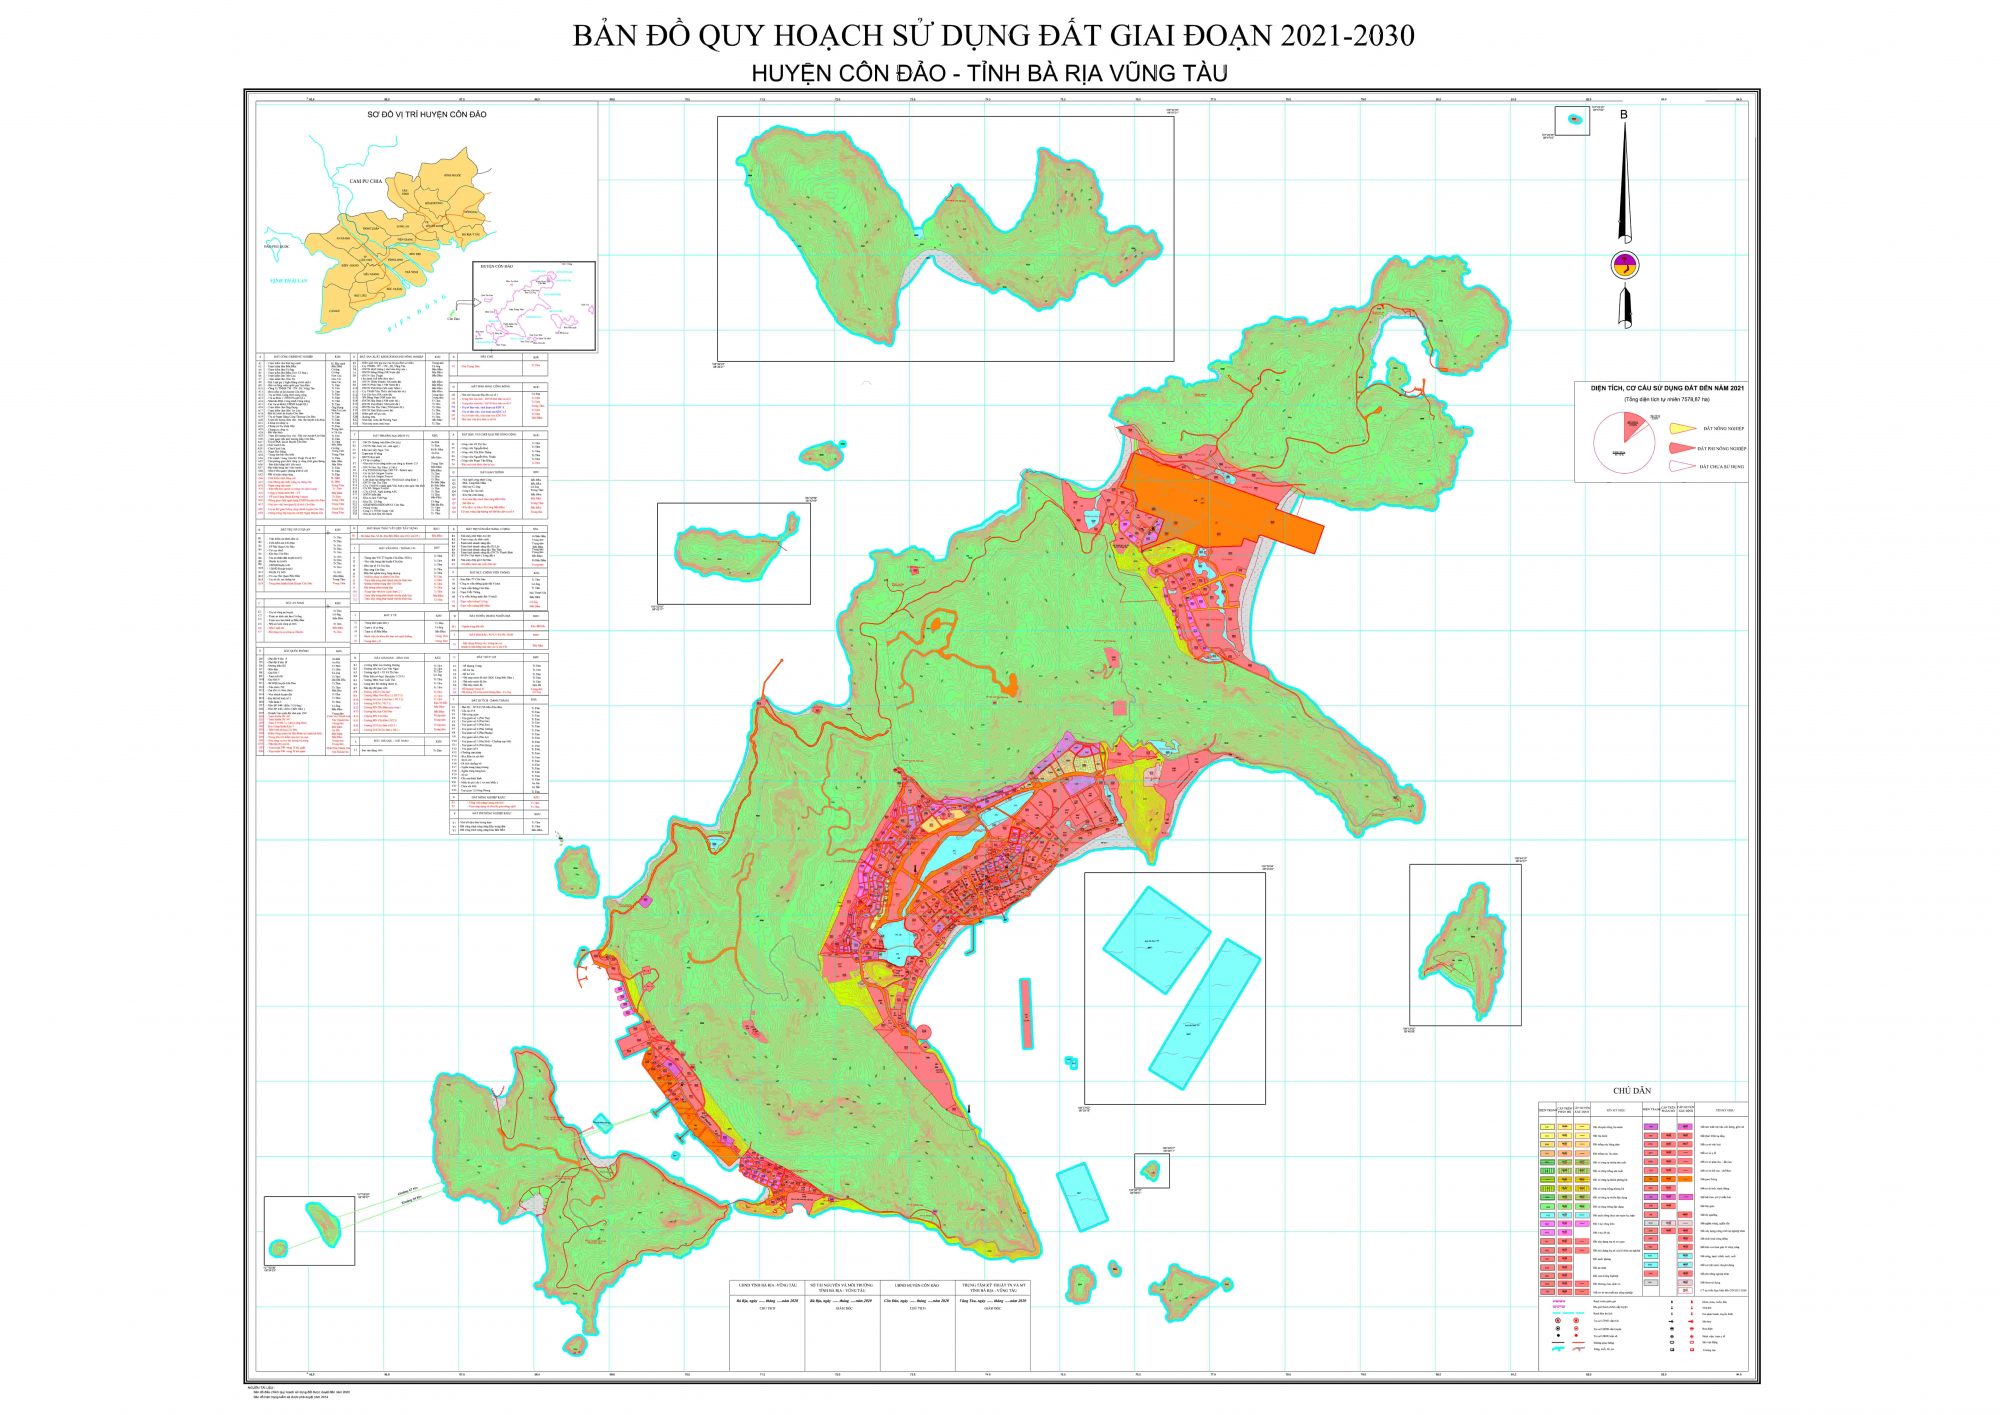 Bản đồ quy hoạch huyện Côn Đảo, tỉnh Bà Rịa - Vũng Tàu đến năm 2030